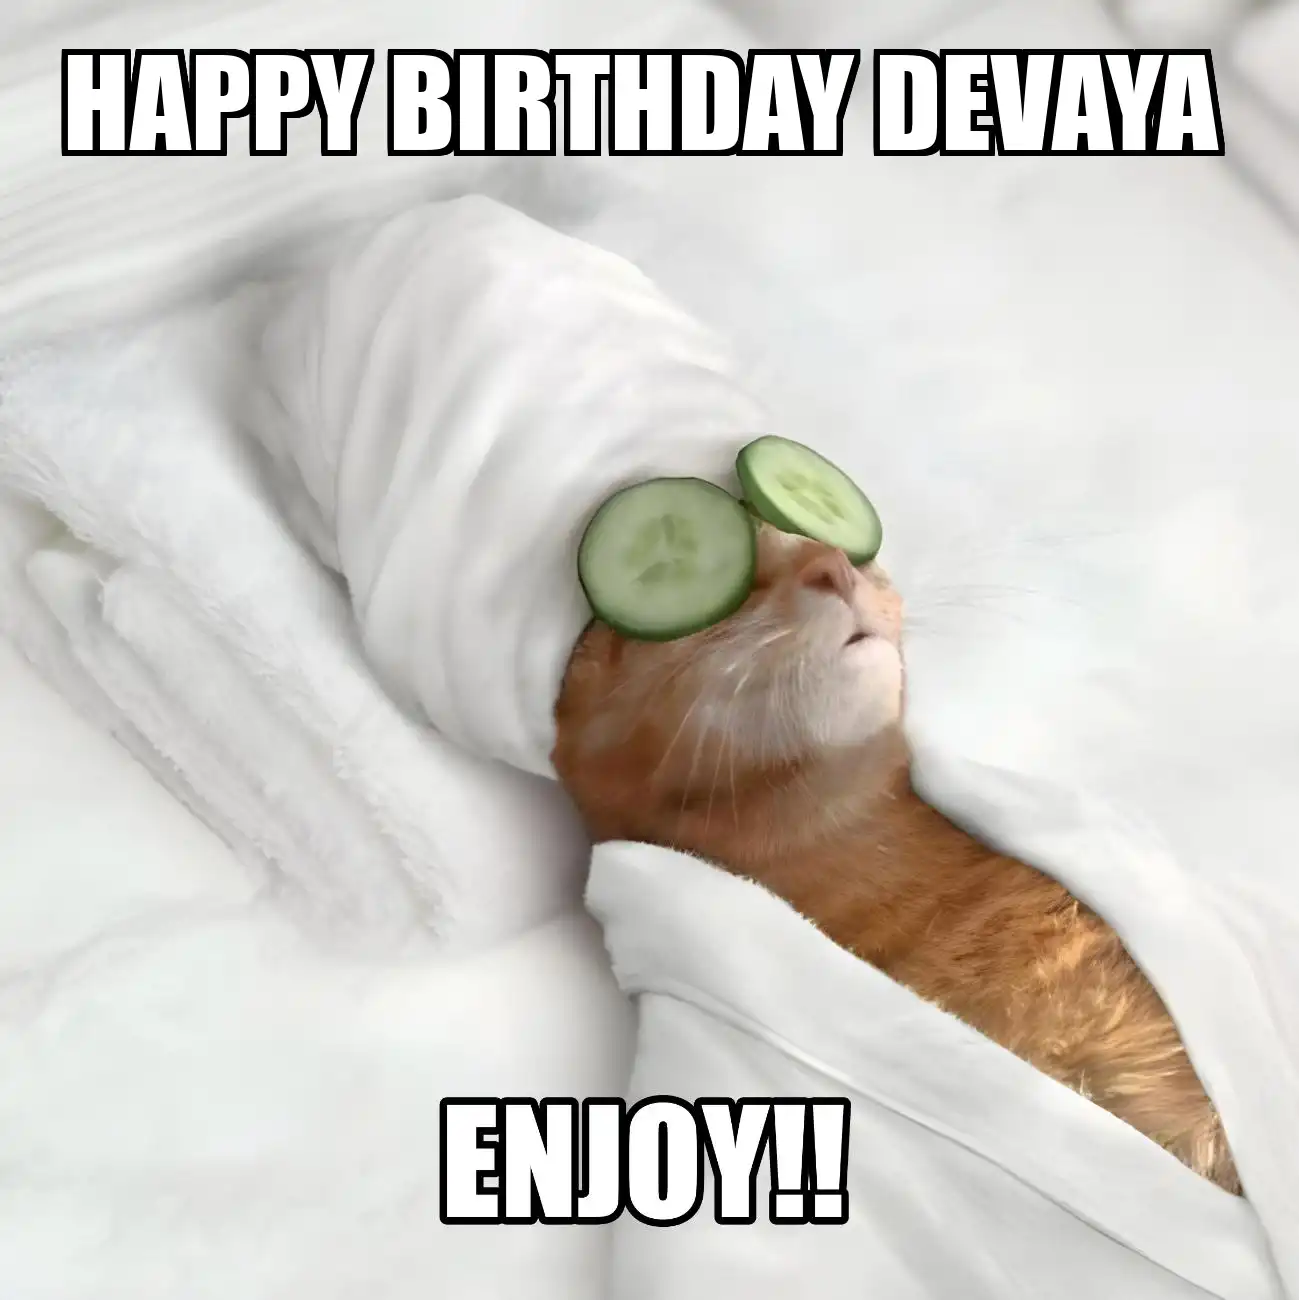 Happy Birthday Devaya Enjoy Cat Meme